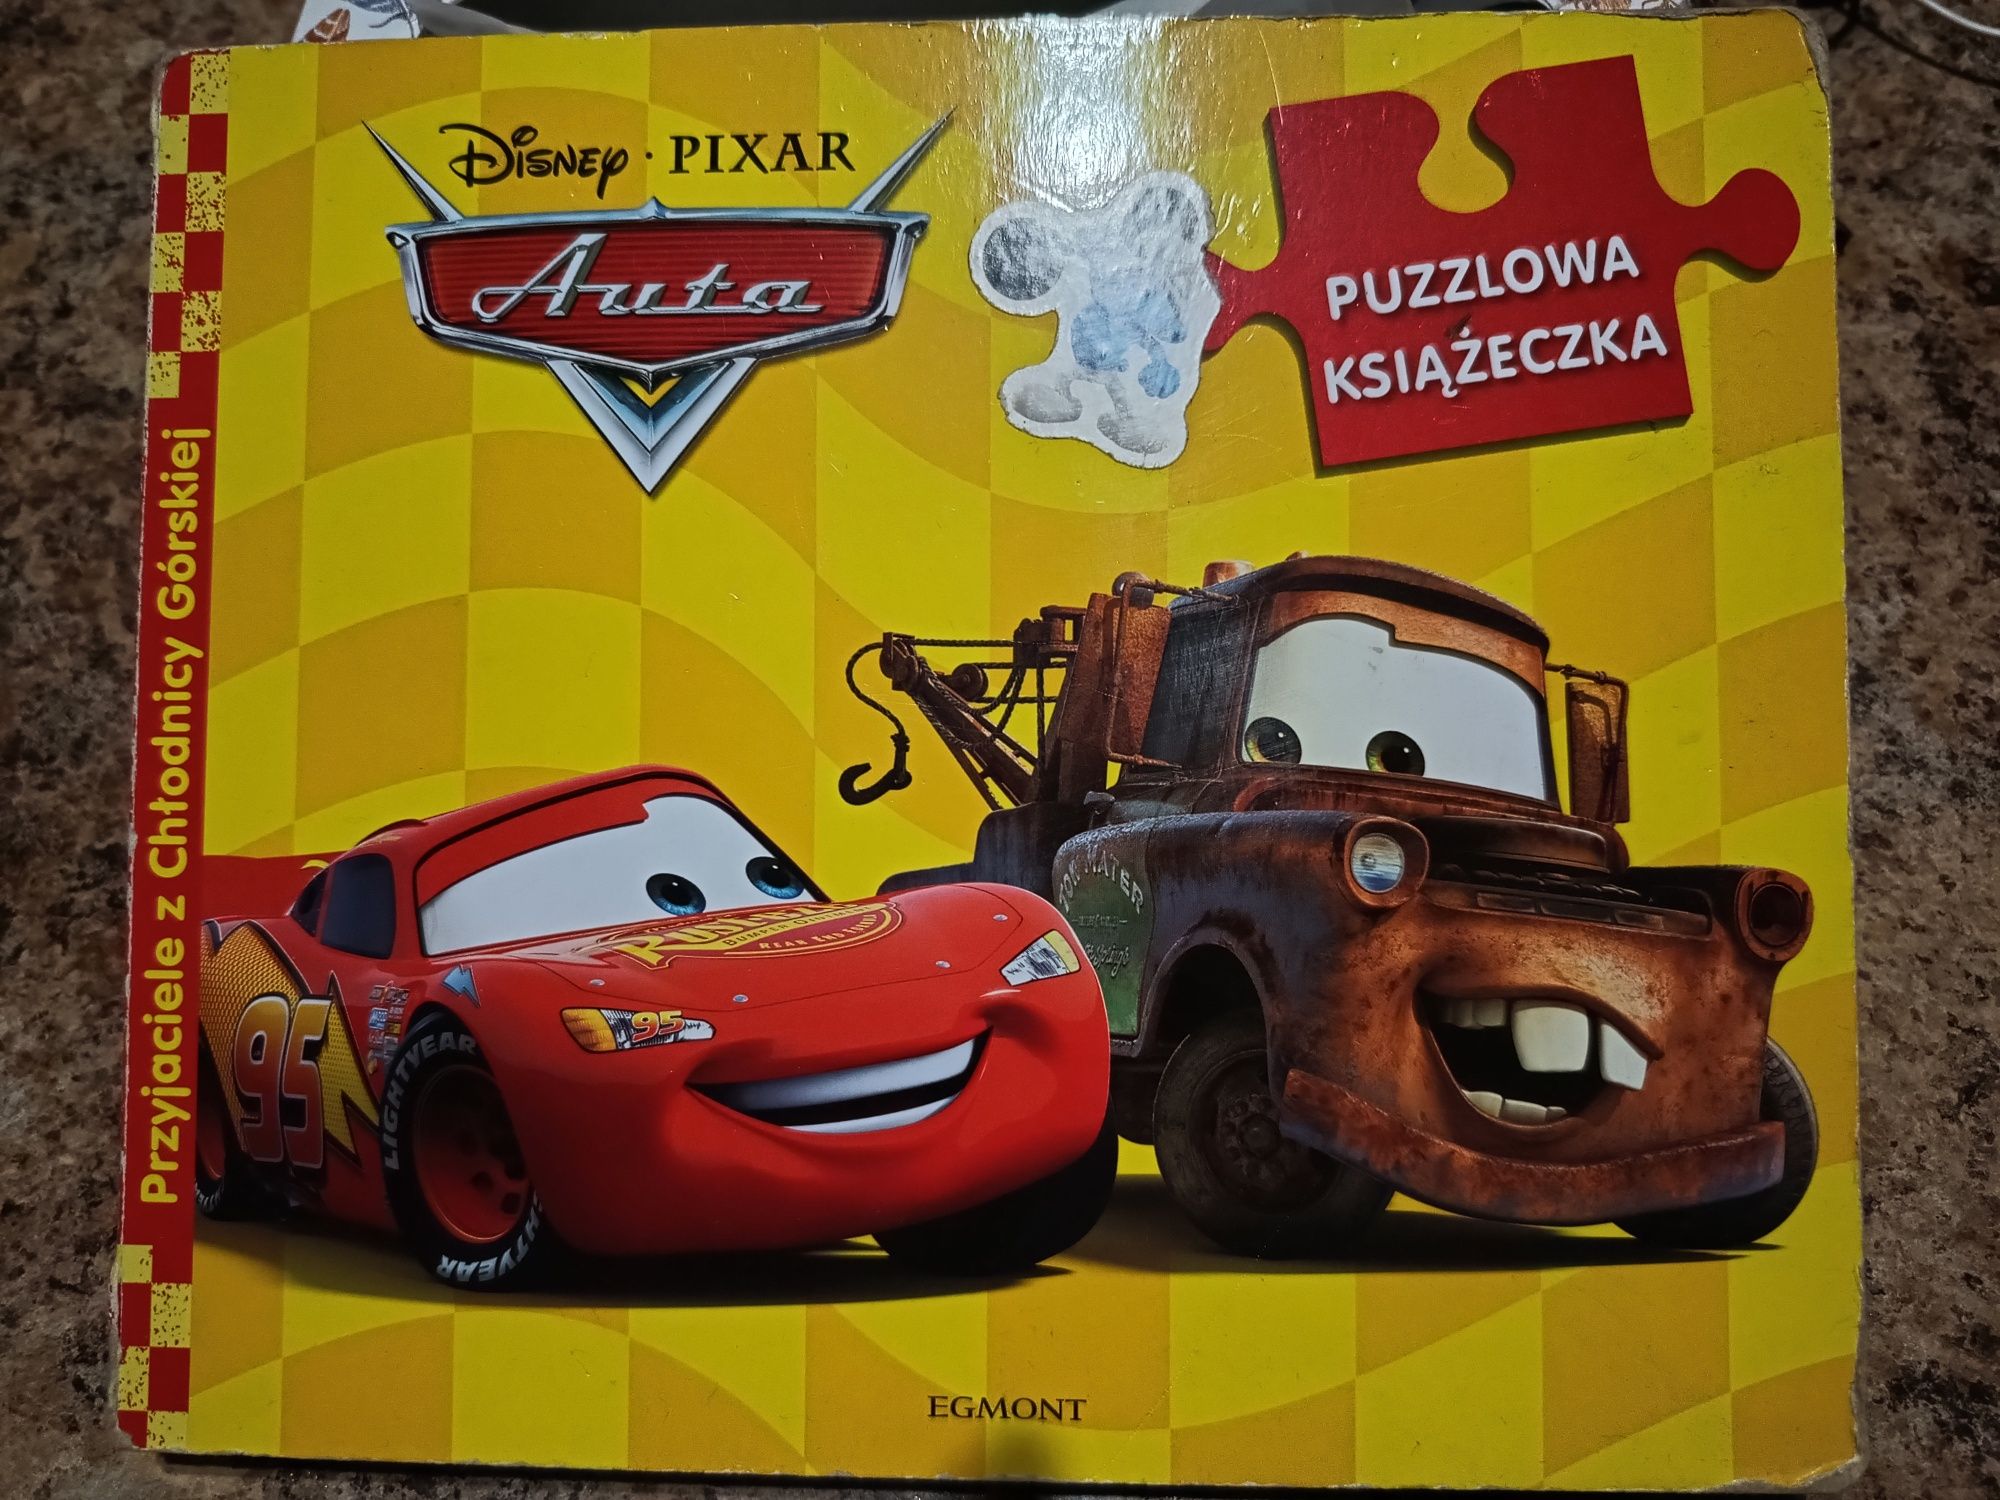 Puzzlowa książeczka Disney Pixat Auta, Zygzak McQueen